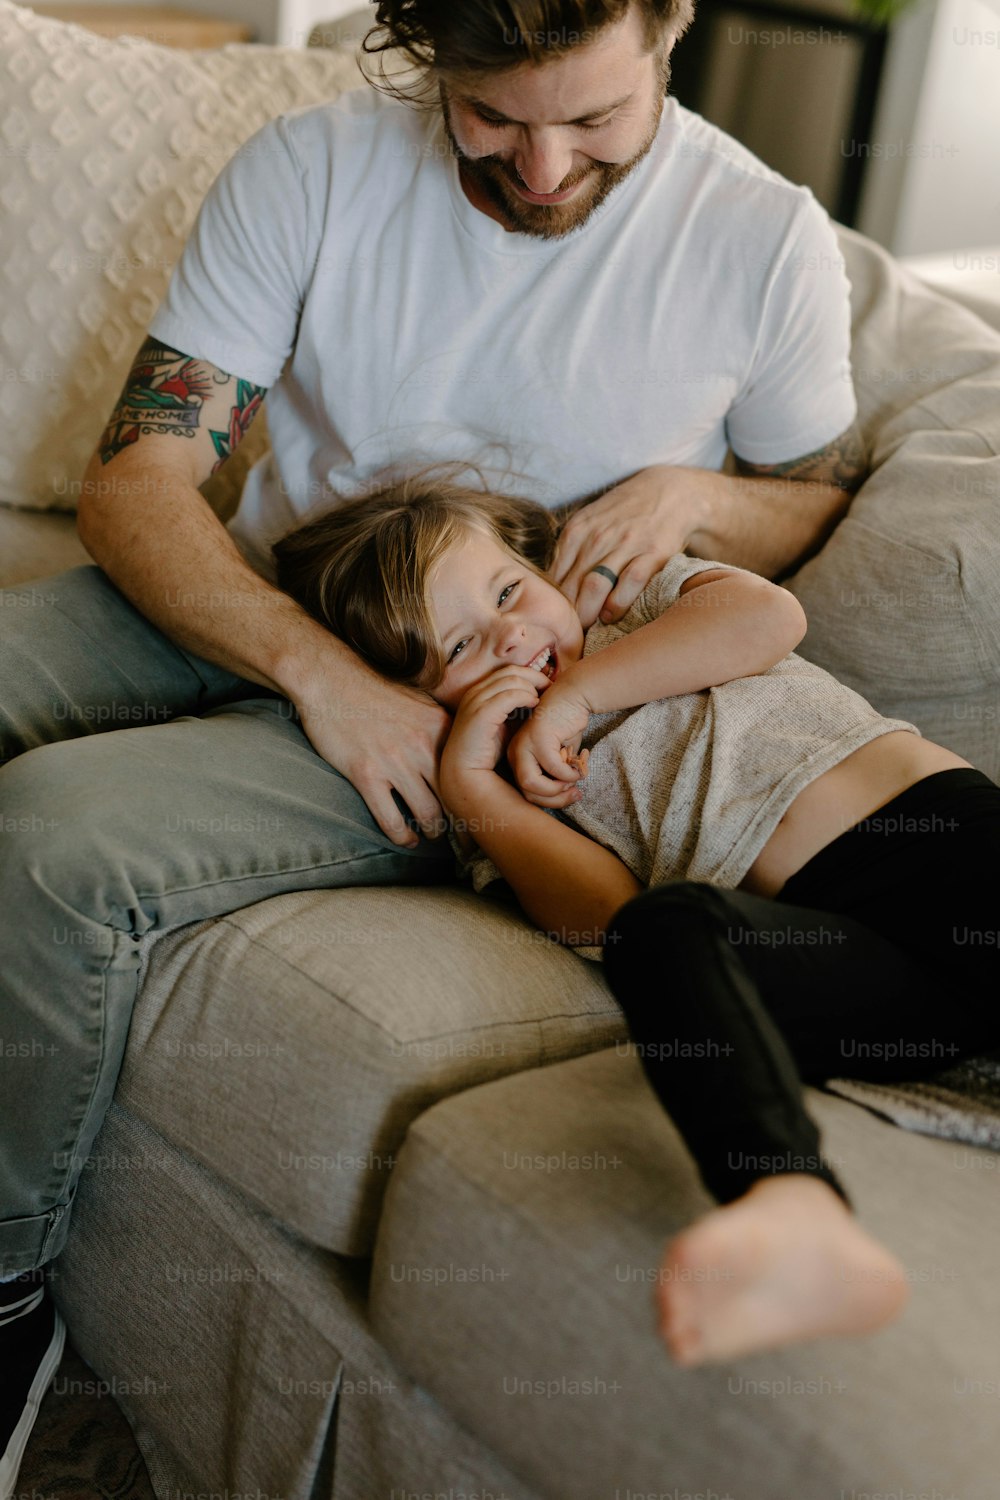 Un hombre sentado encima de un sofá junto a una niña